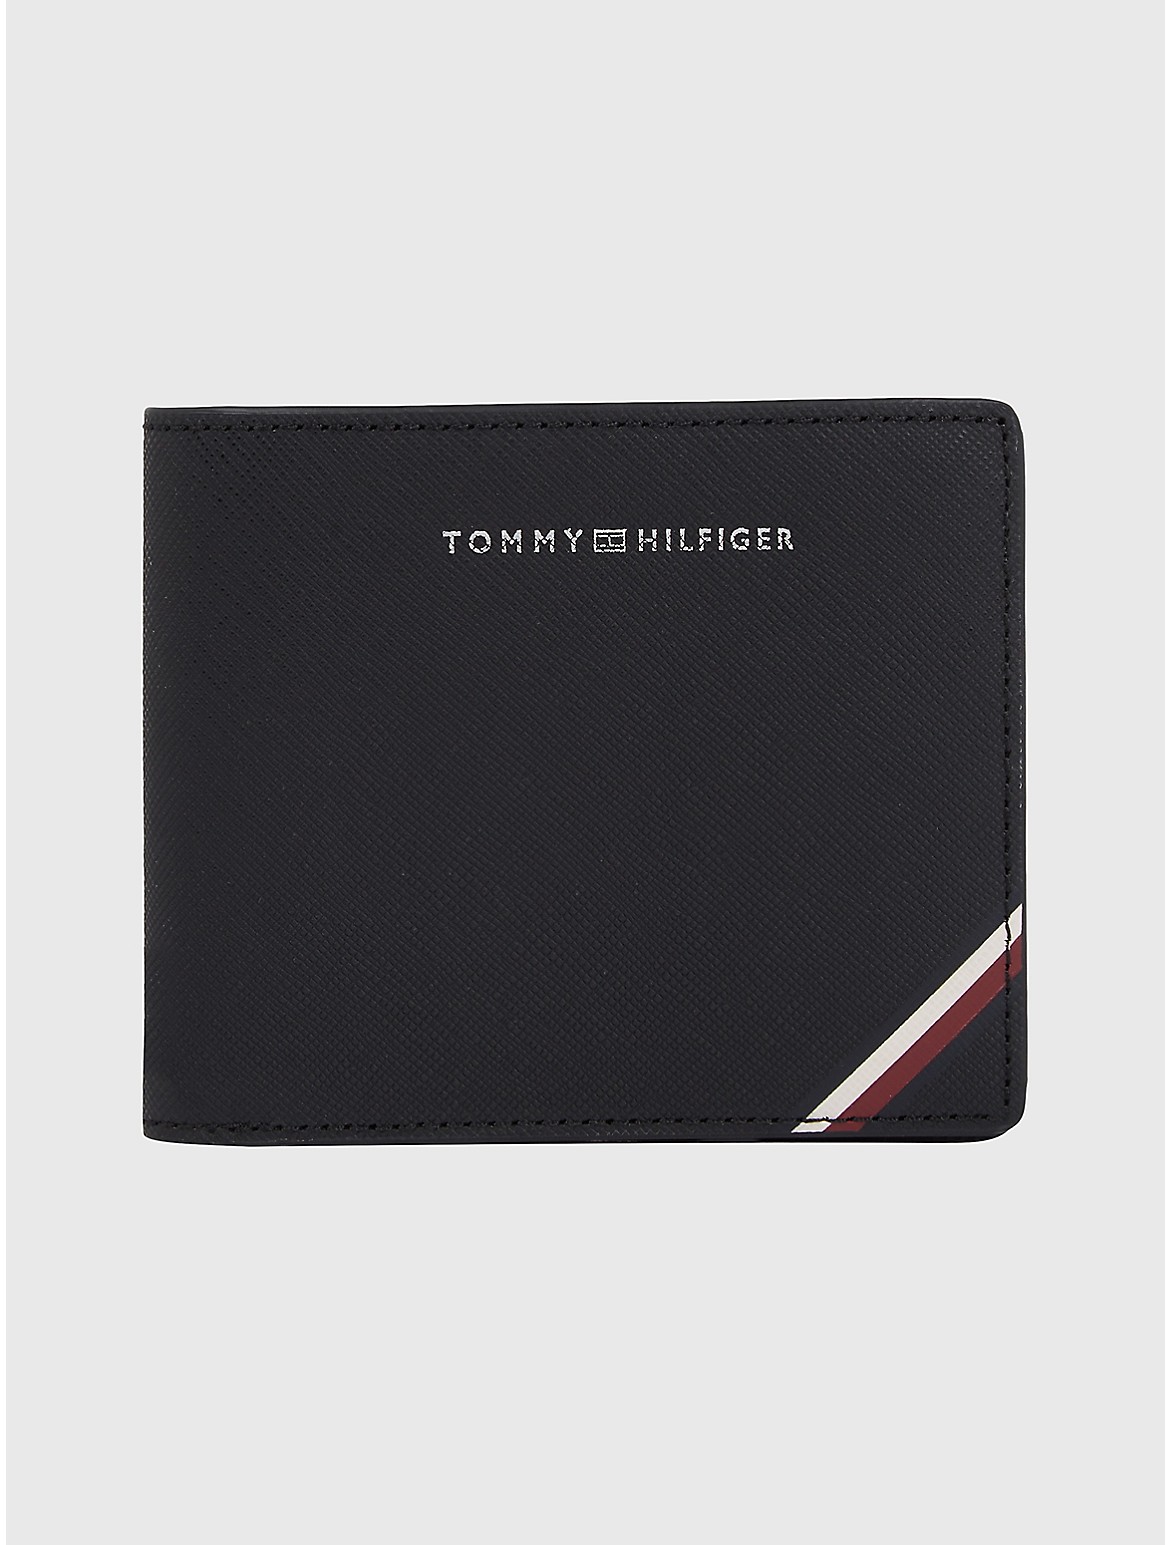 Tommy Hilfiger Men's Stripe Leather Wallet with Coin Pocket - Black